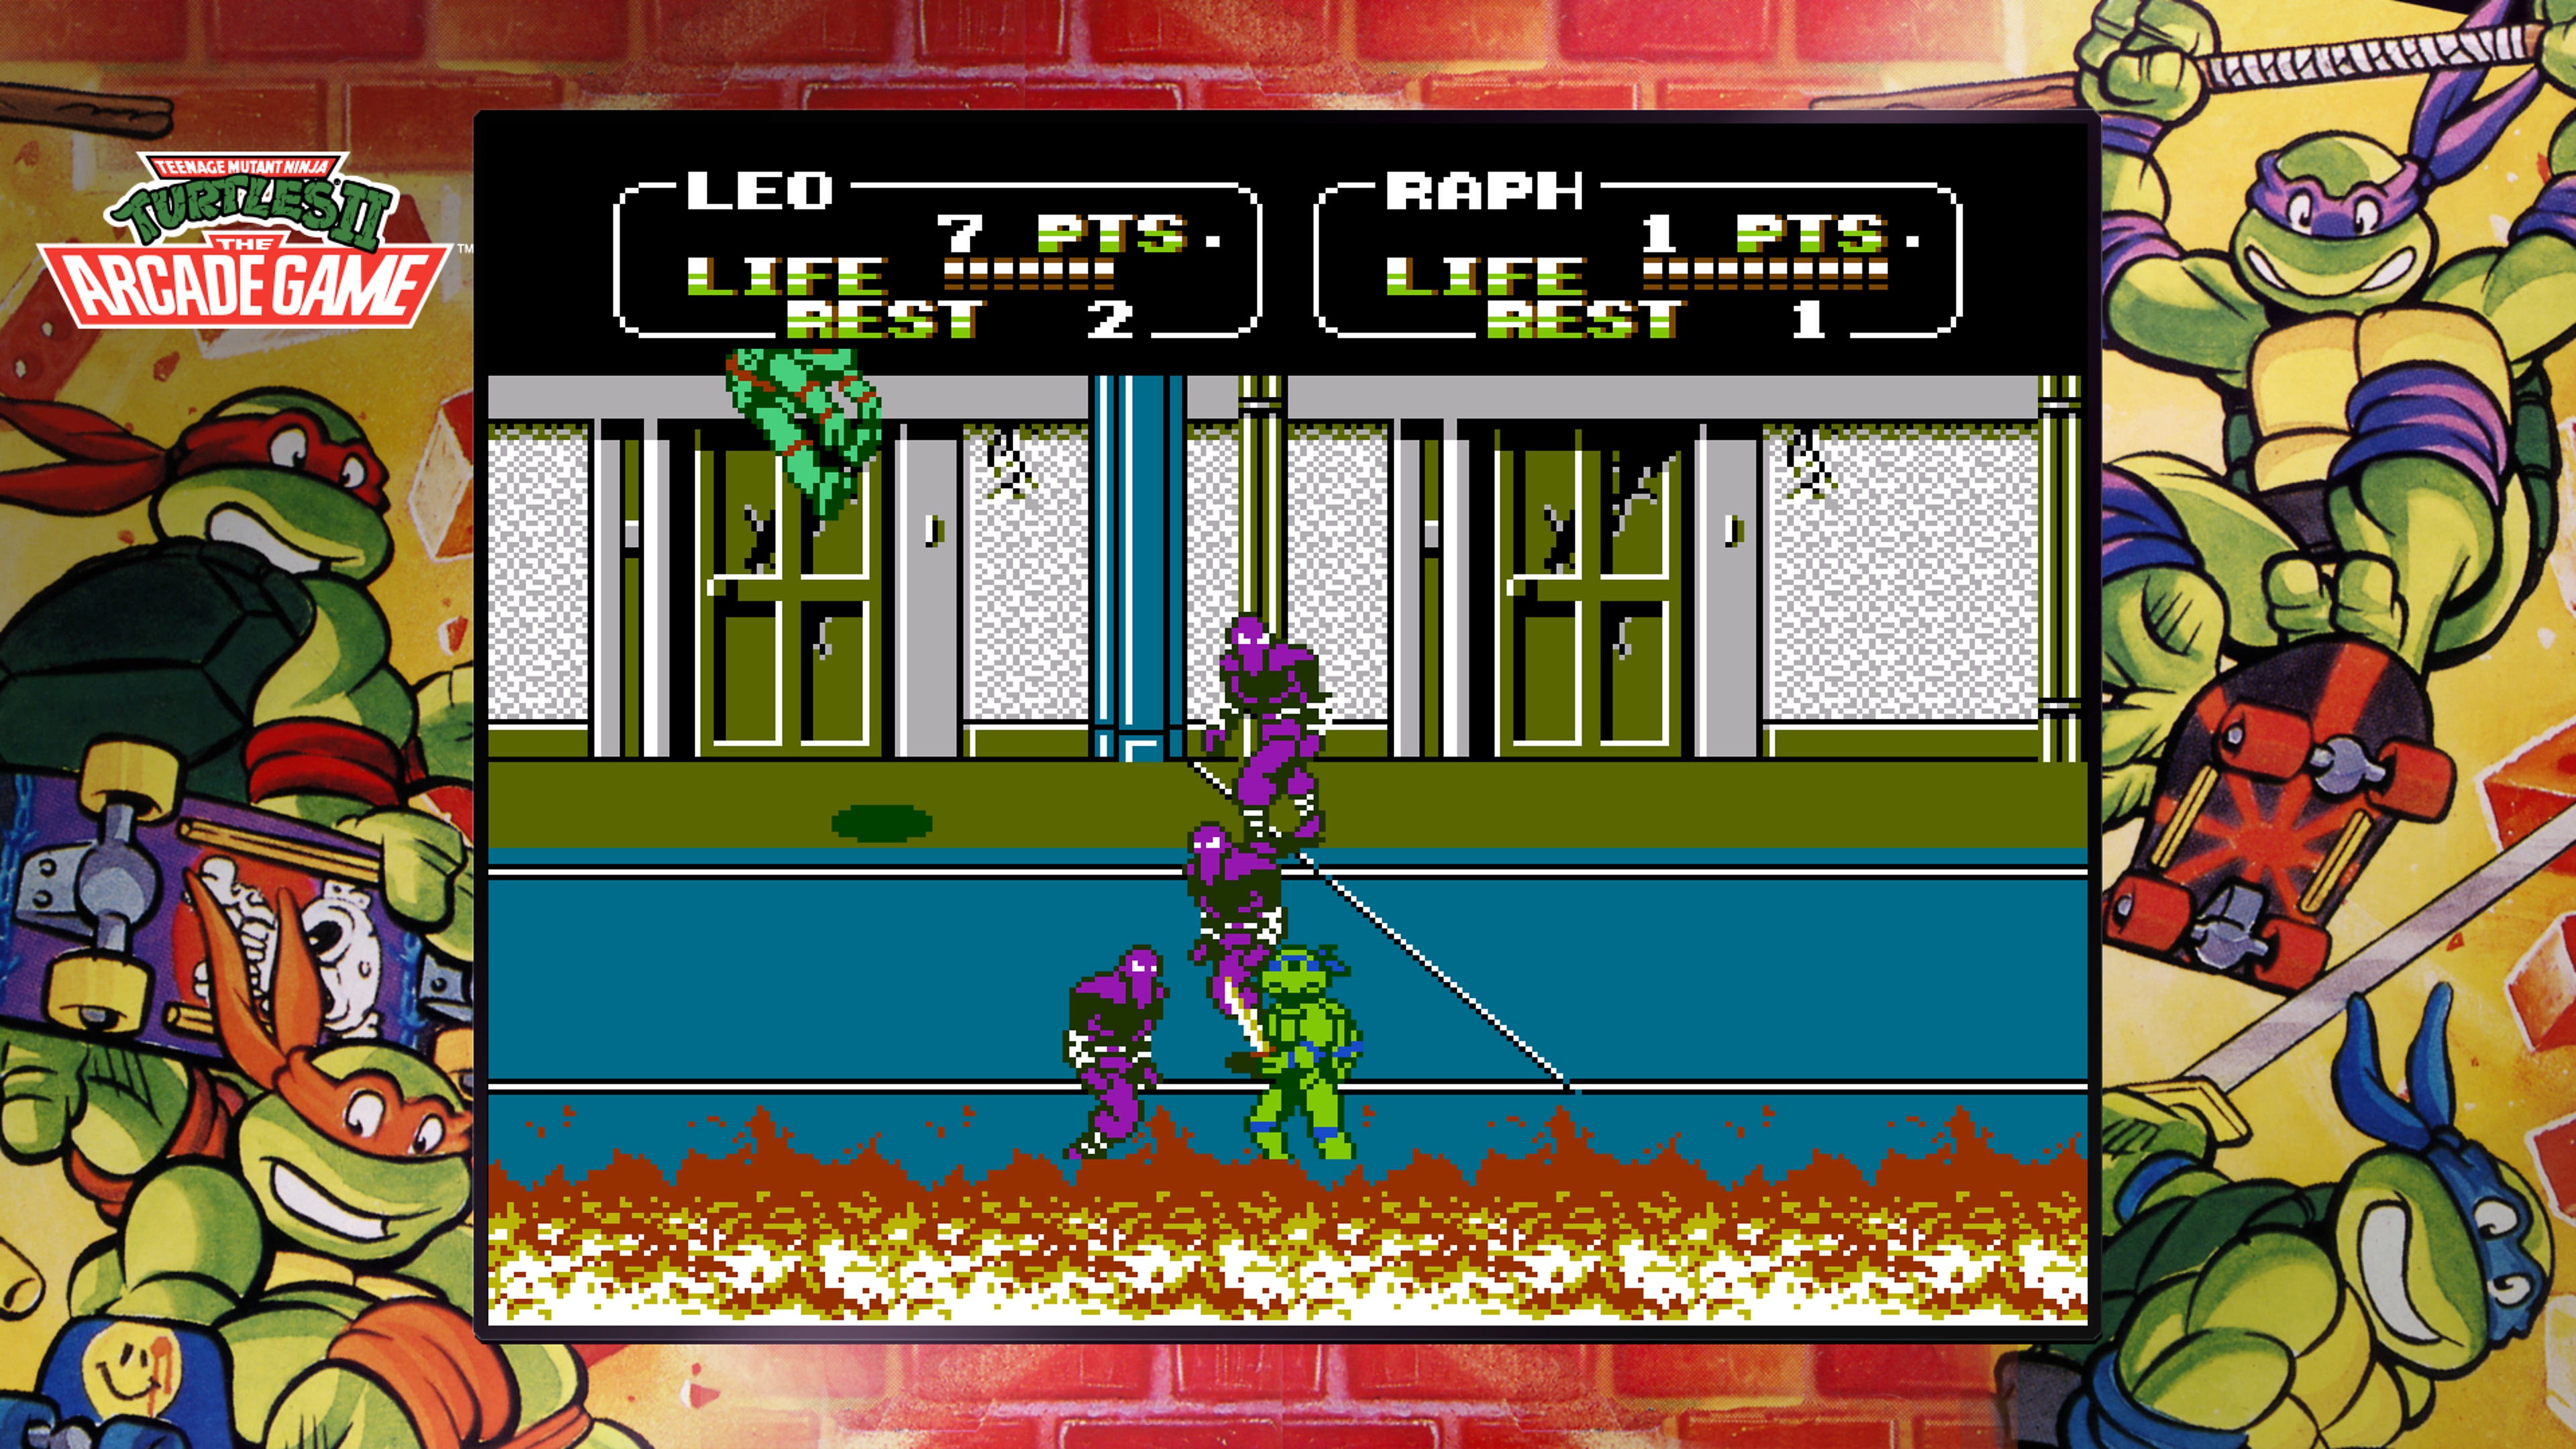 Kolekcja Teenage Mutant Ninja Turtles – zrzut ekranu Arcade Game pokazujący Leonardo walczącego z Klanem Stopy